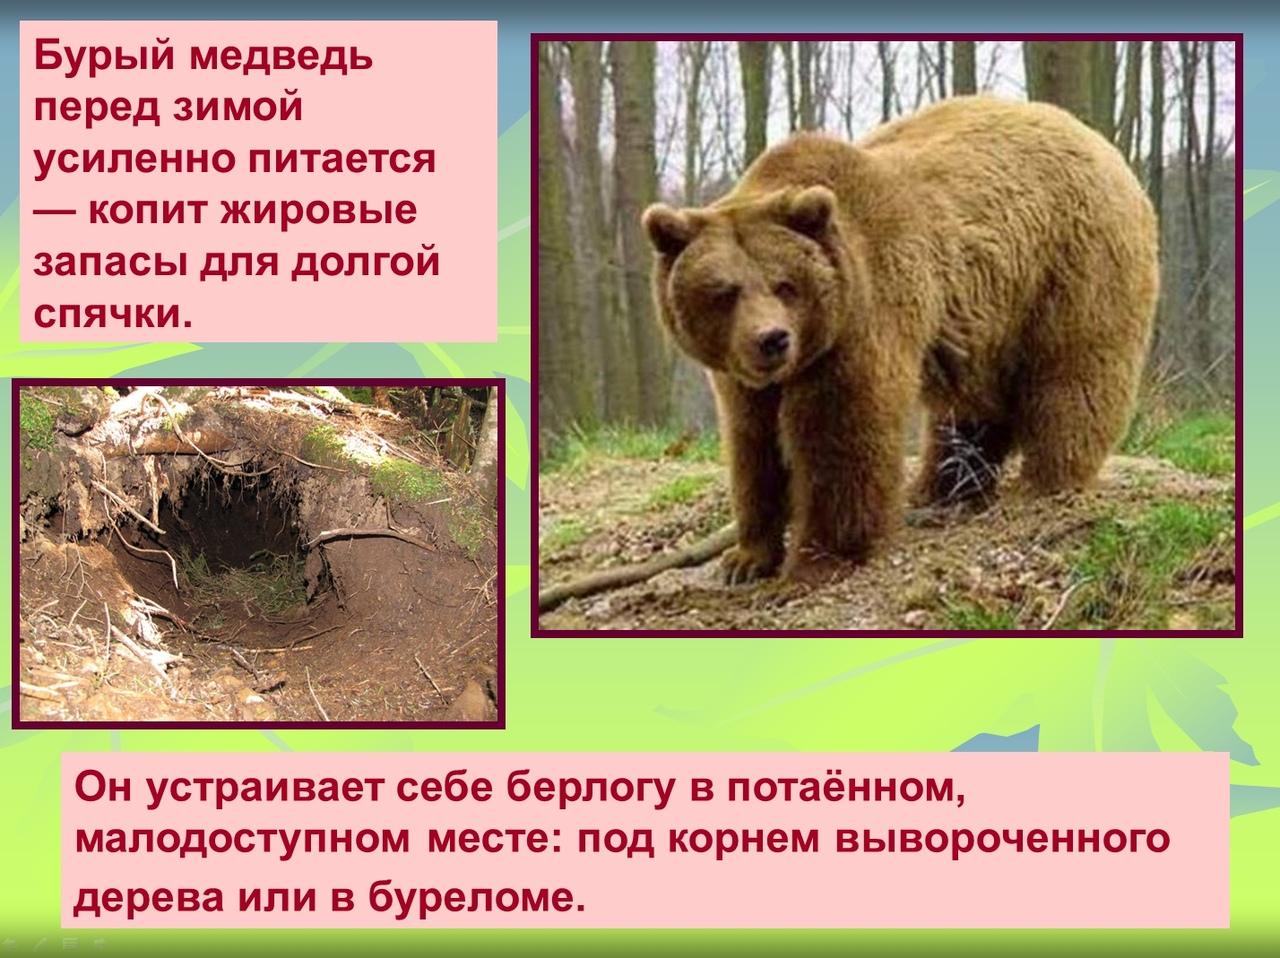 Тишина у берлоги!» Как Минский зоопарк готовятся к зиме